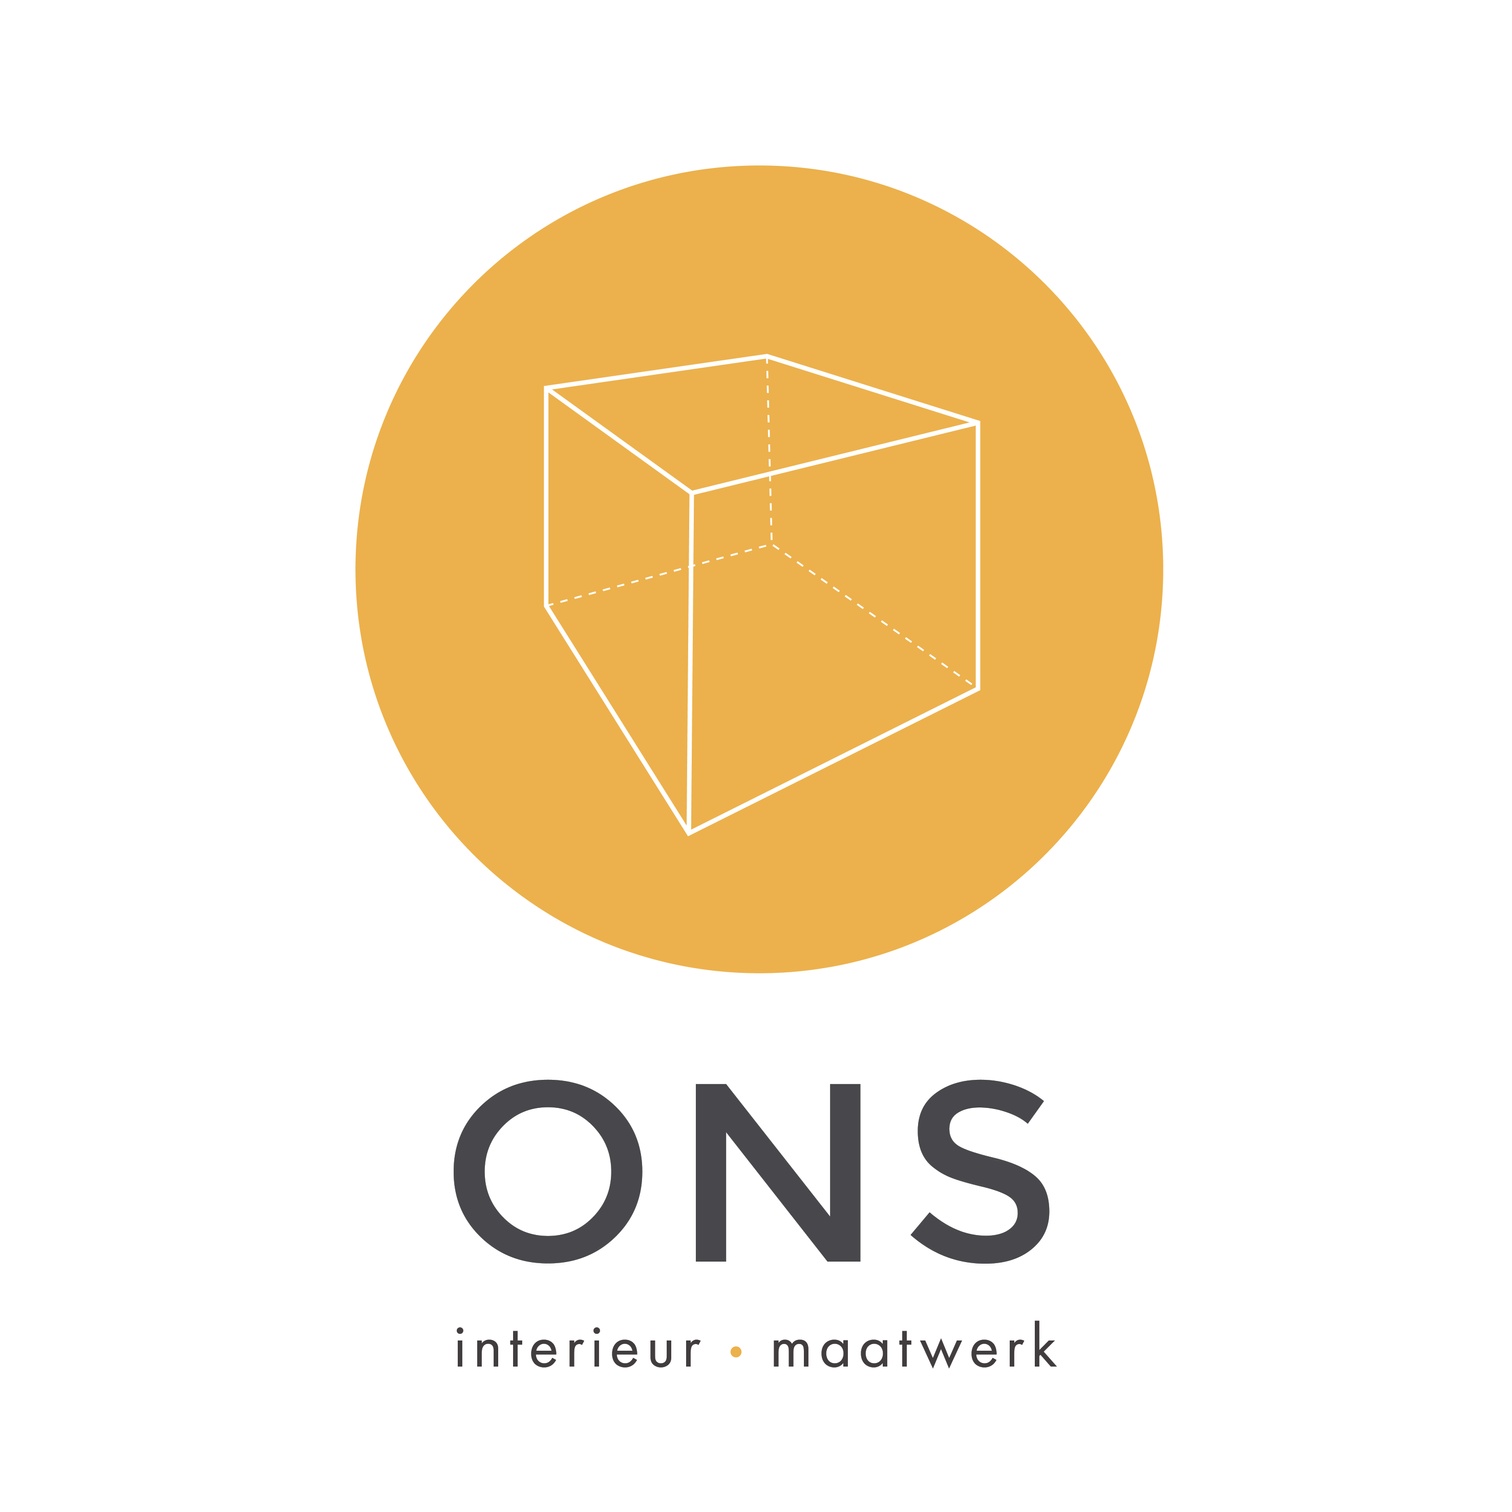 ONS interieur • maatwerk logo